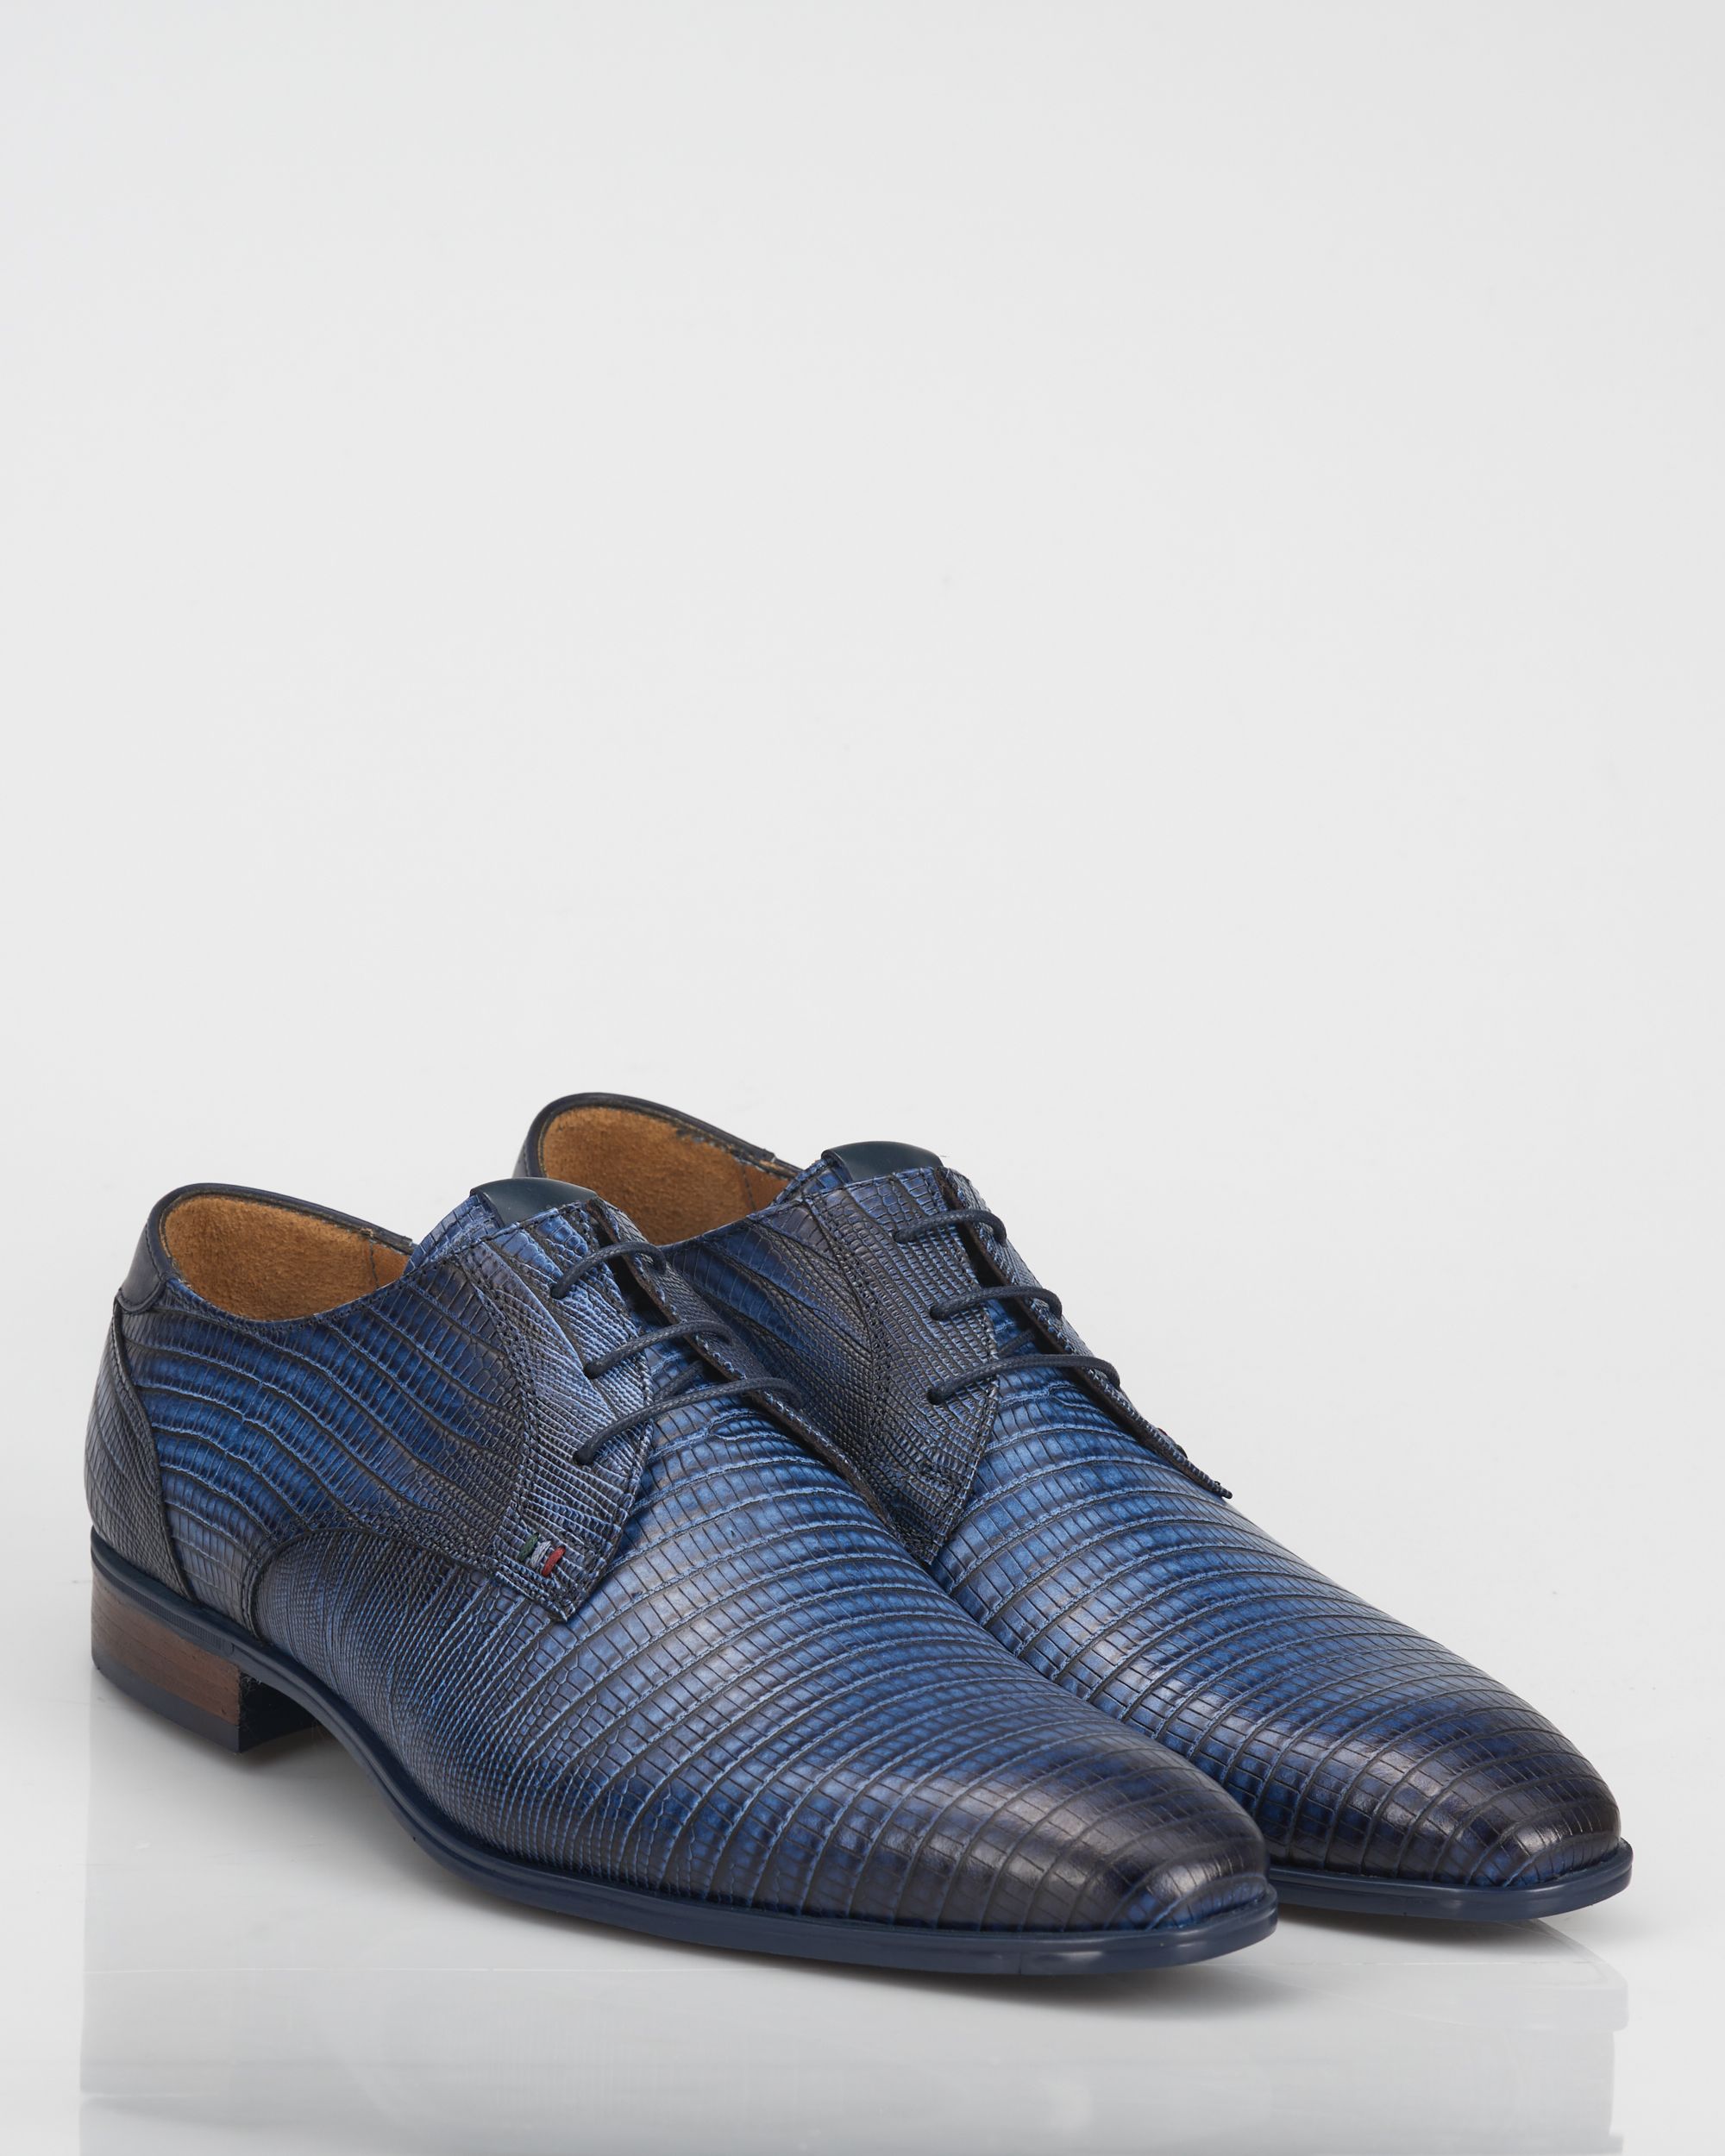 Metropolitan Aanvrager vijver Giorgio Geklede schoenen | Shop nu - OFM.